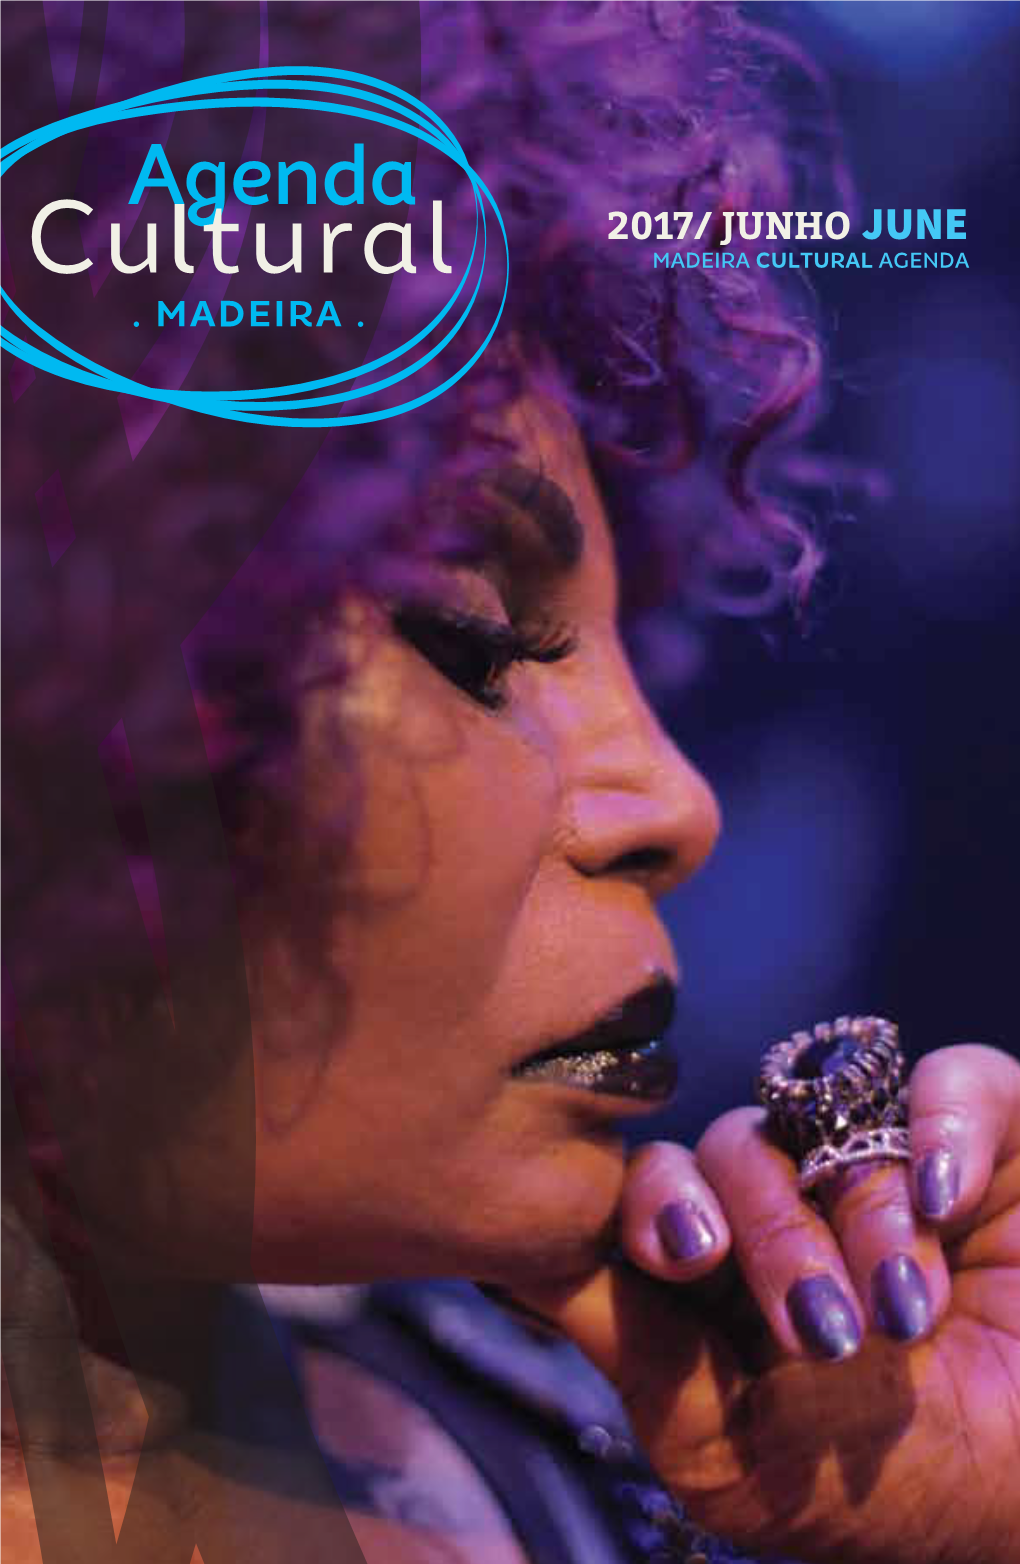 2017/ Junho June Madeira Cultural Agenda